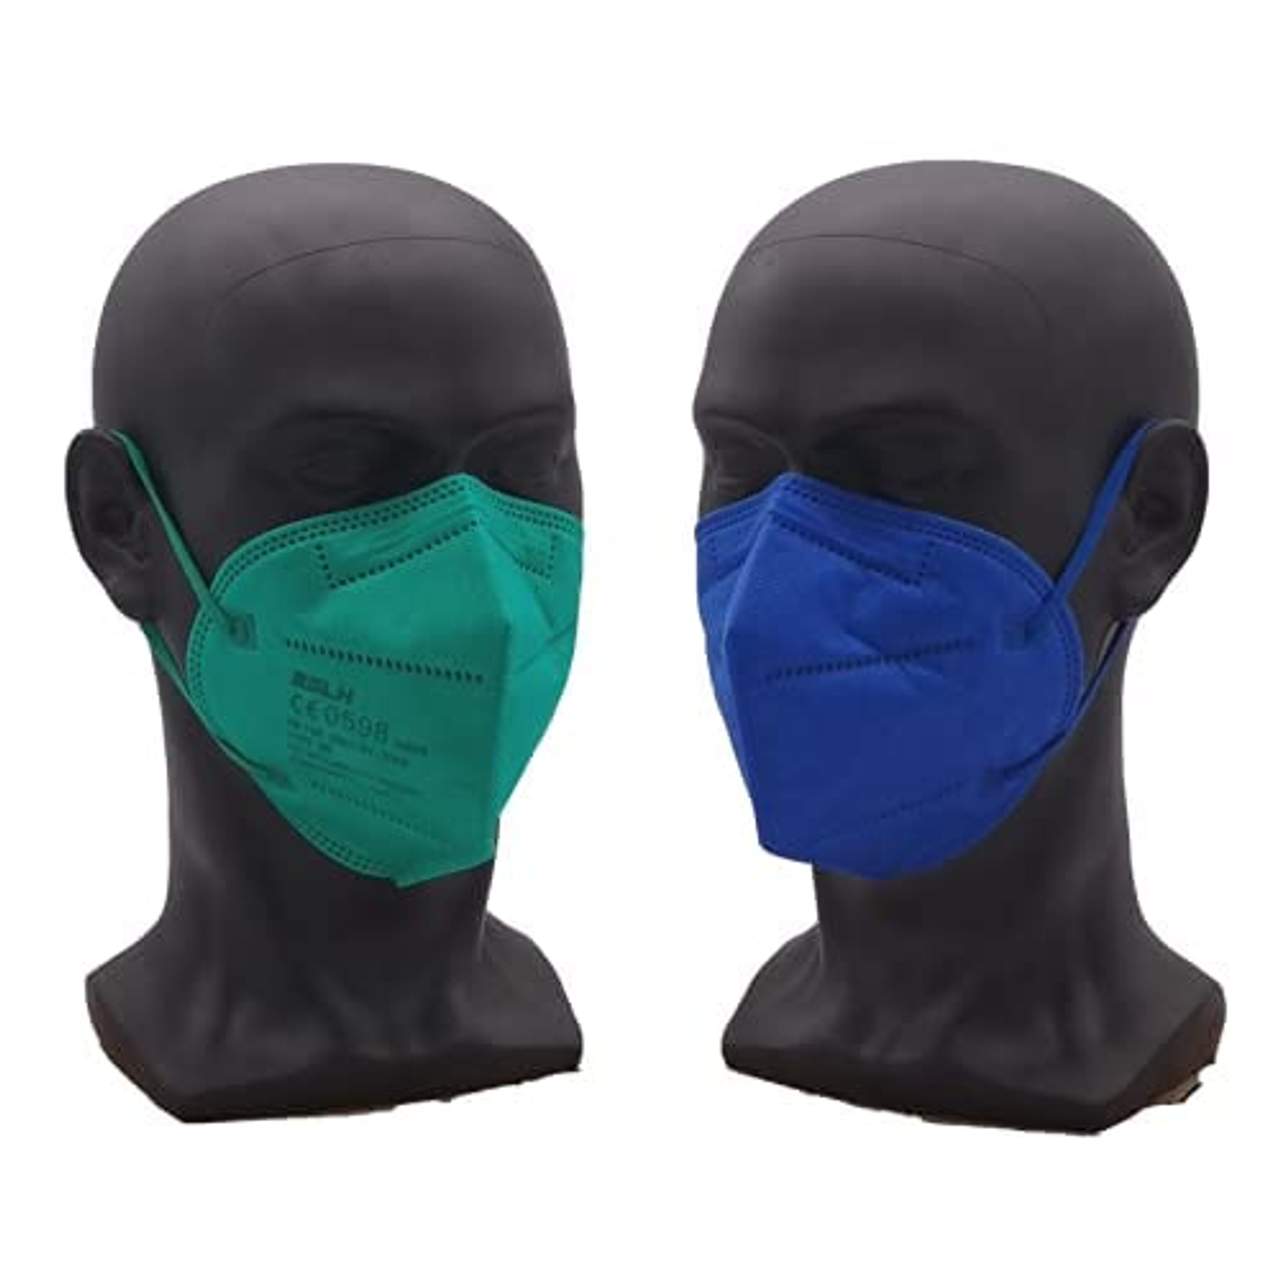 20 Bunte FFP2 Masken farbig gemischt